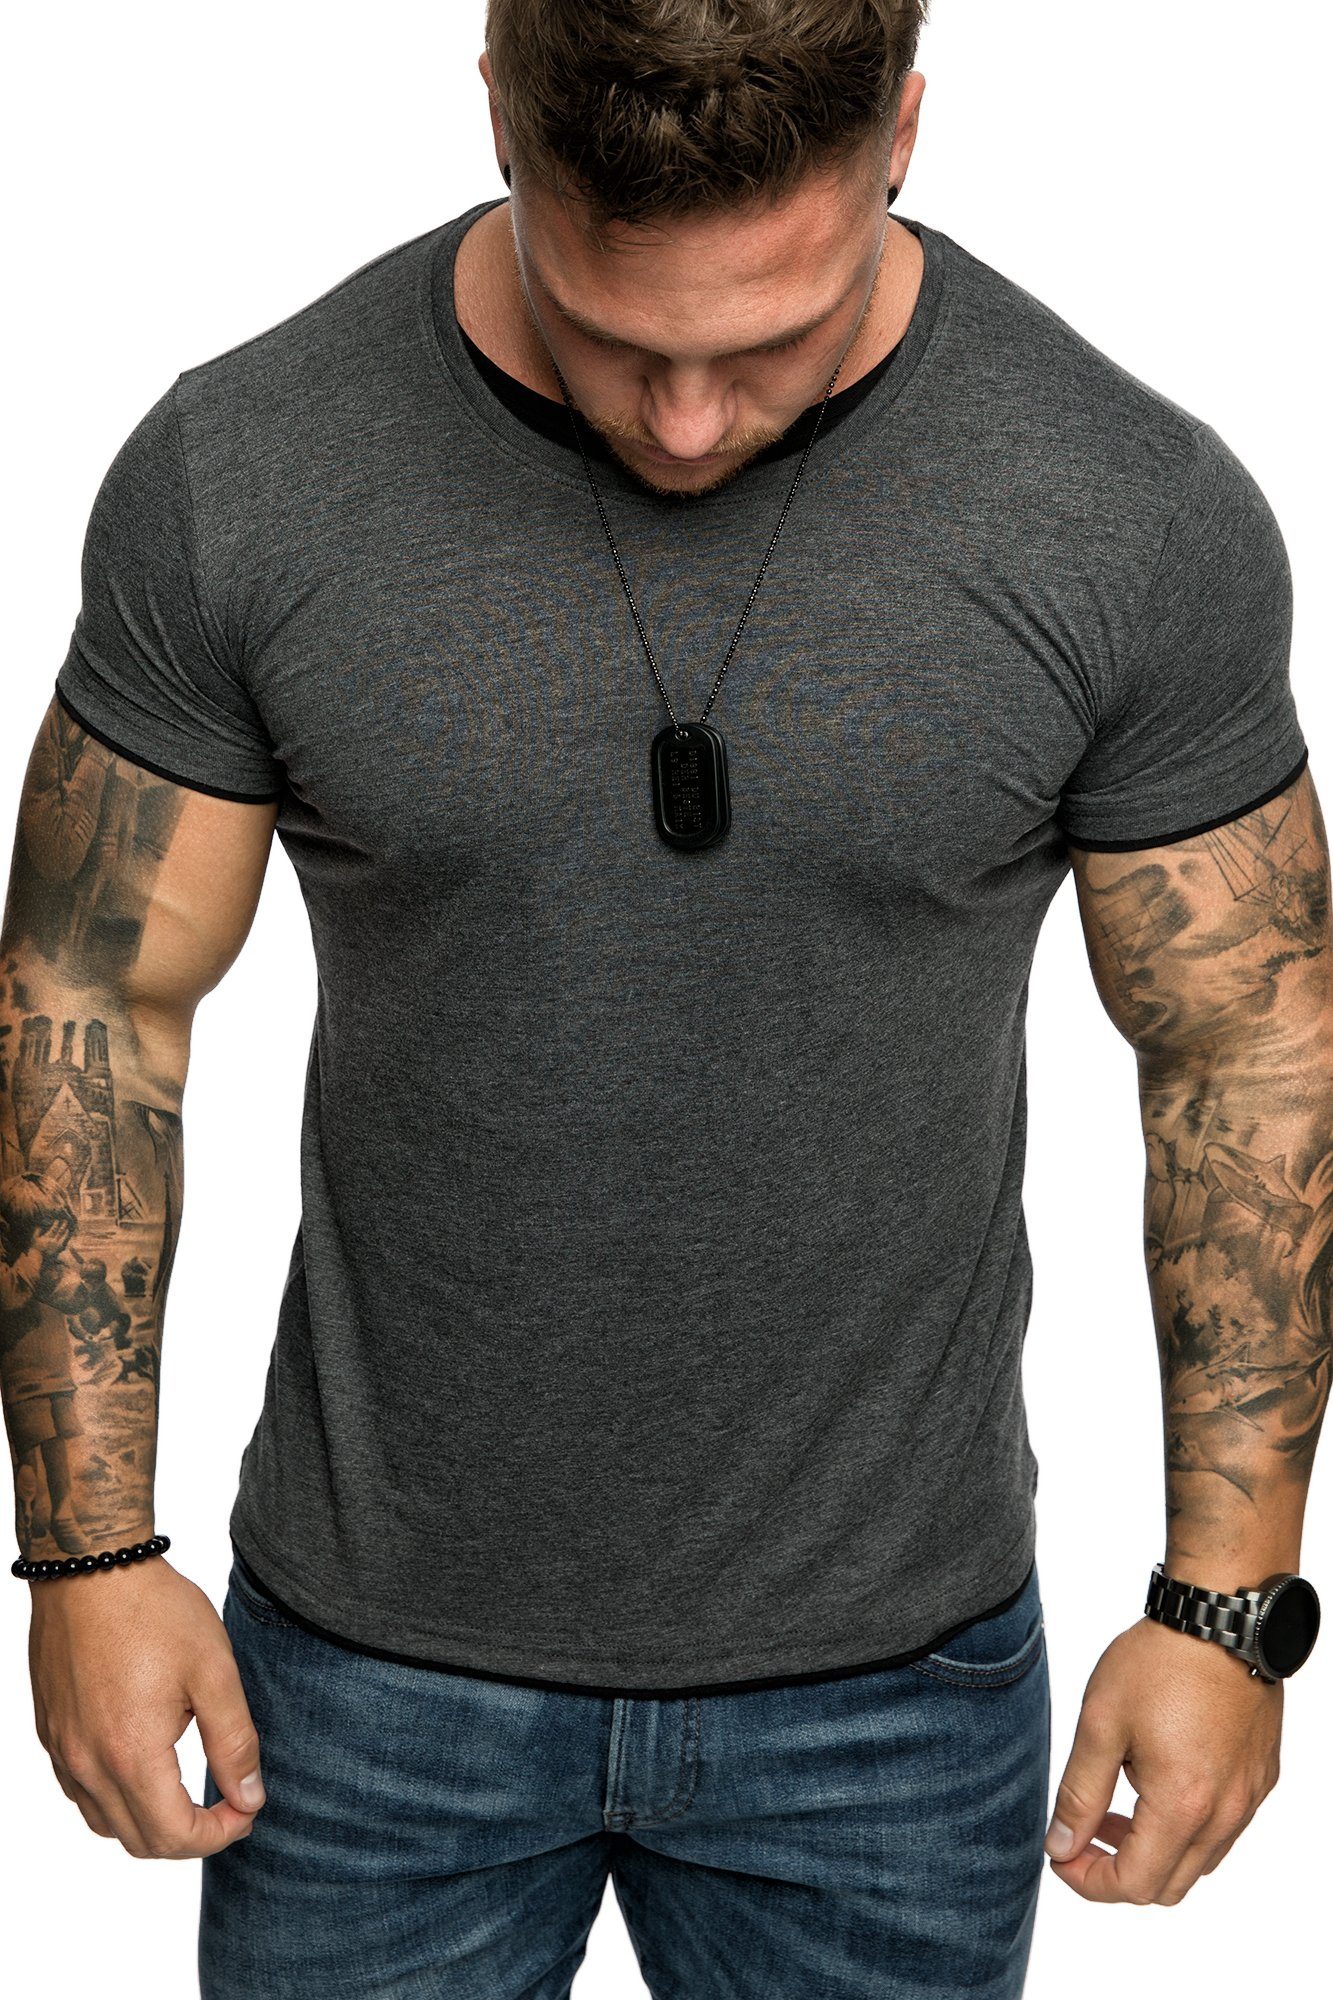 Herren LAKEWOOD Rundhalsausschnitt Farbig T-Shirt Slim-Fit Anthrazit/Schwarz Shirt Doppel Amaci&Sons Basic mit